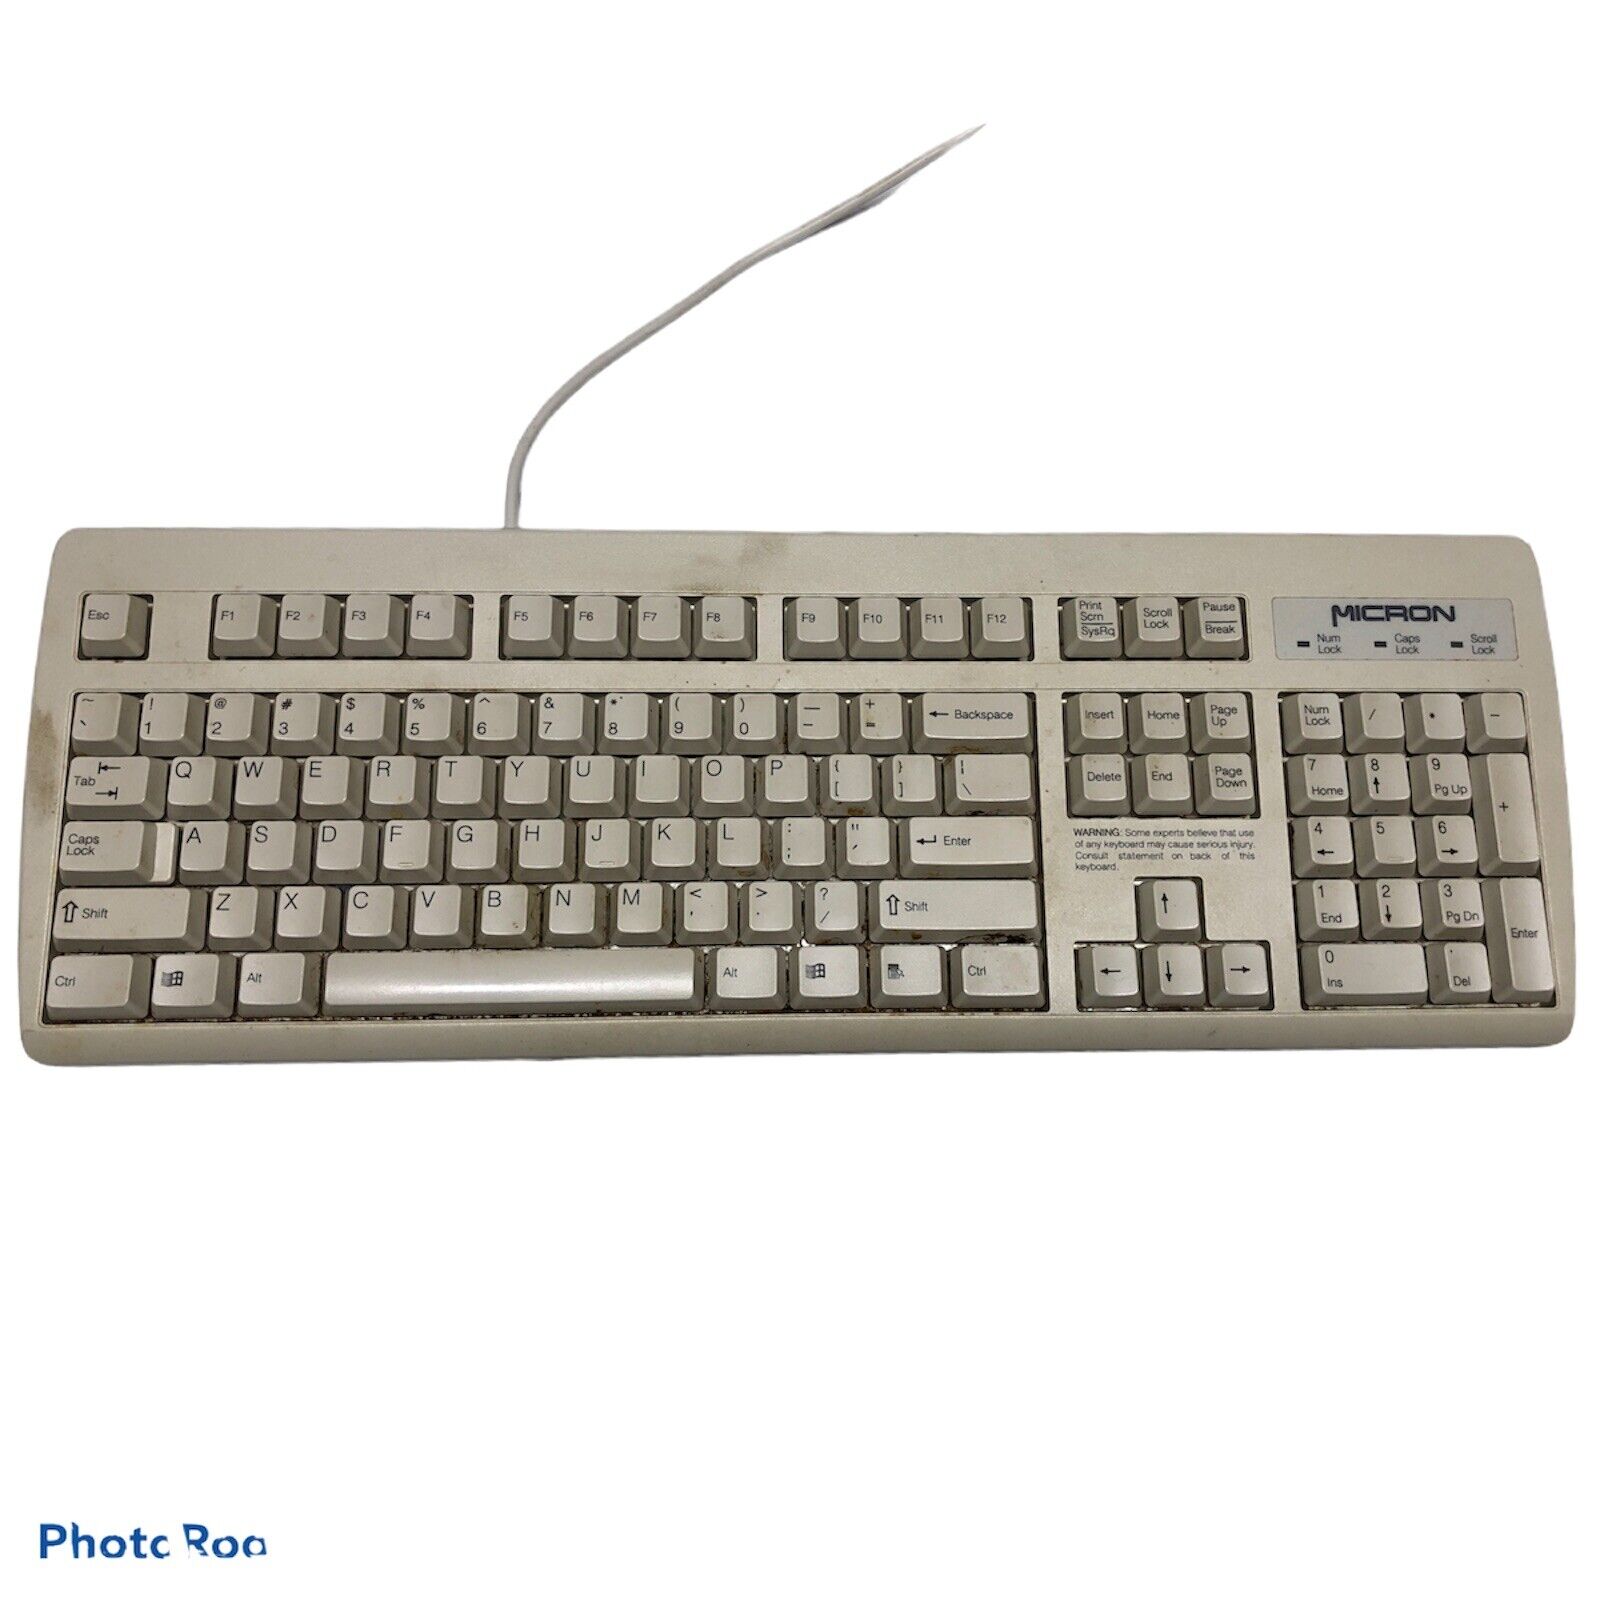 NMB Micron RT2258TW keyboard ps/2